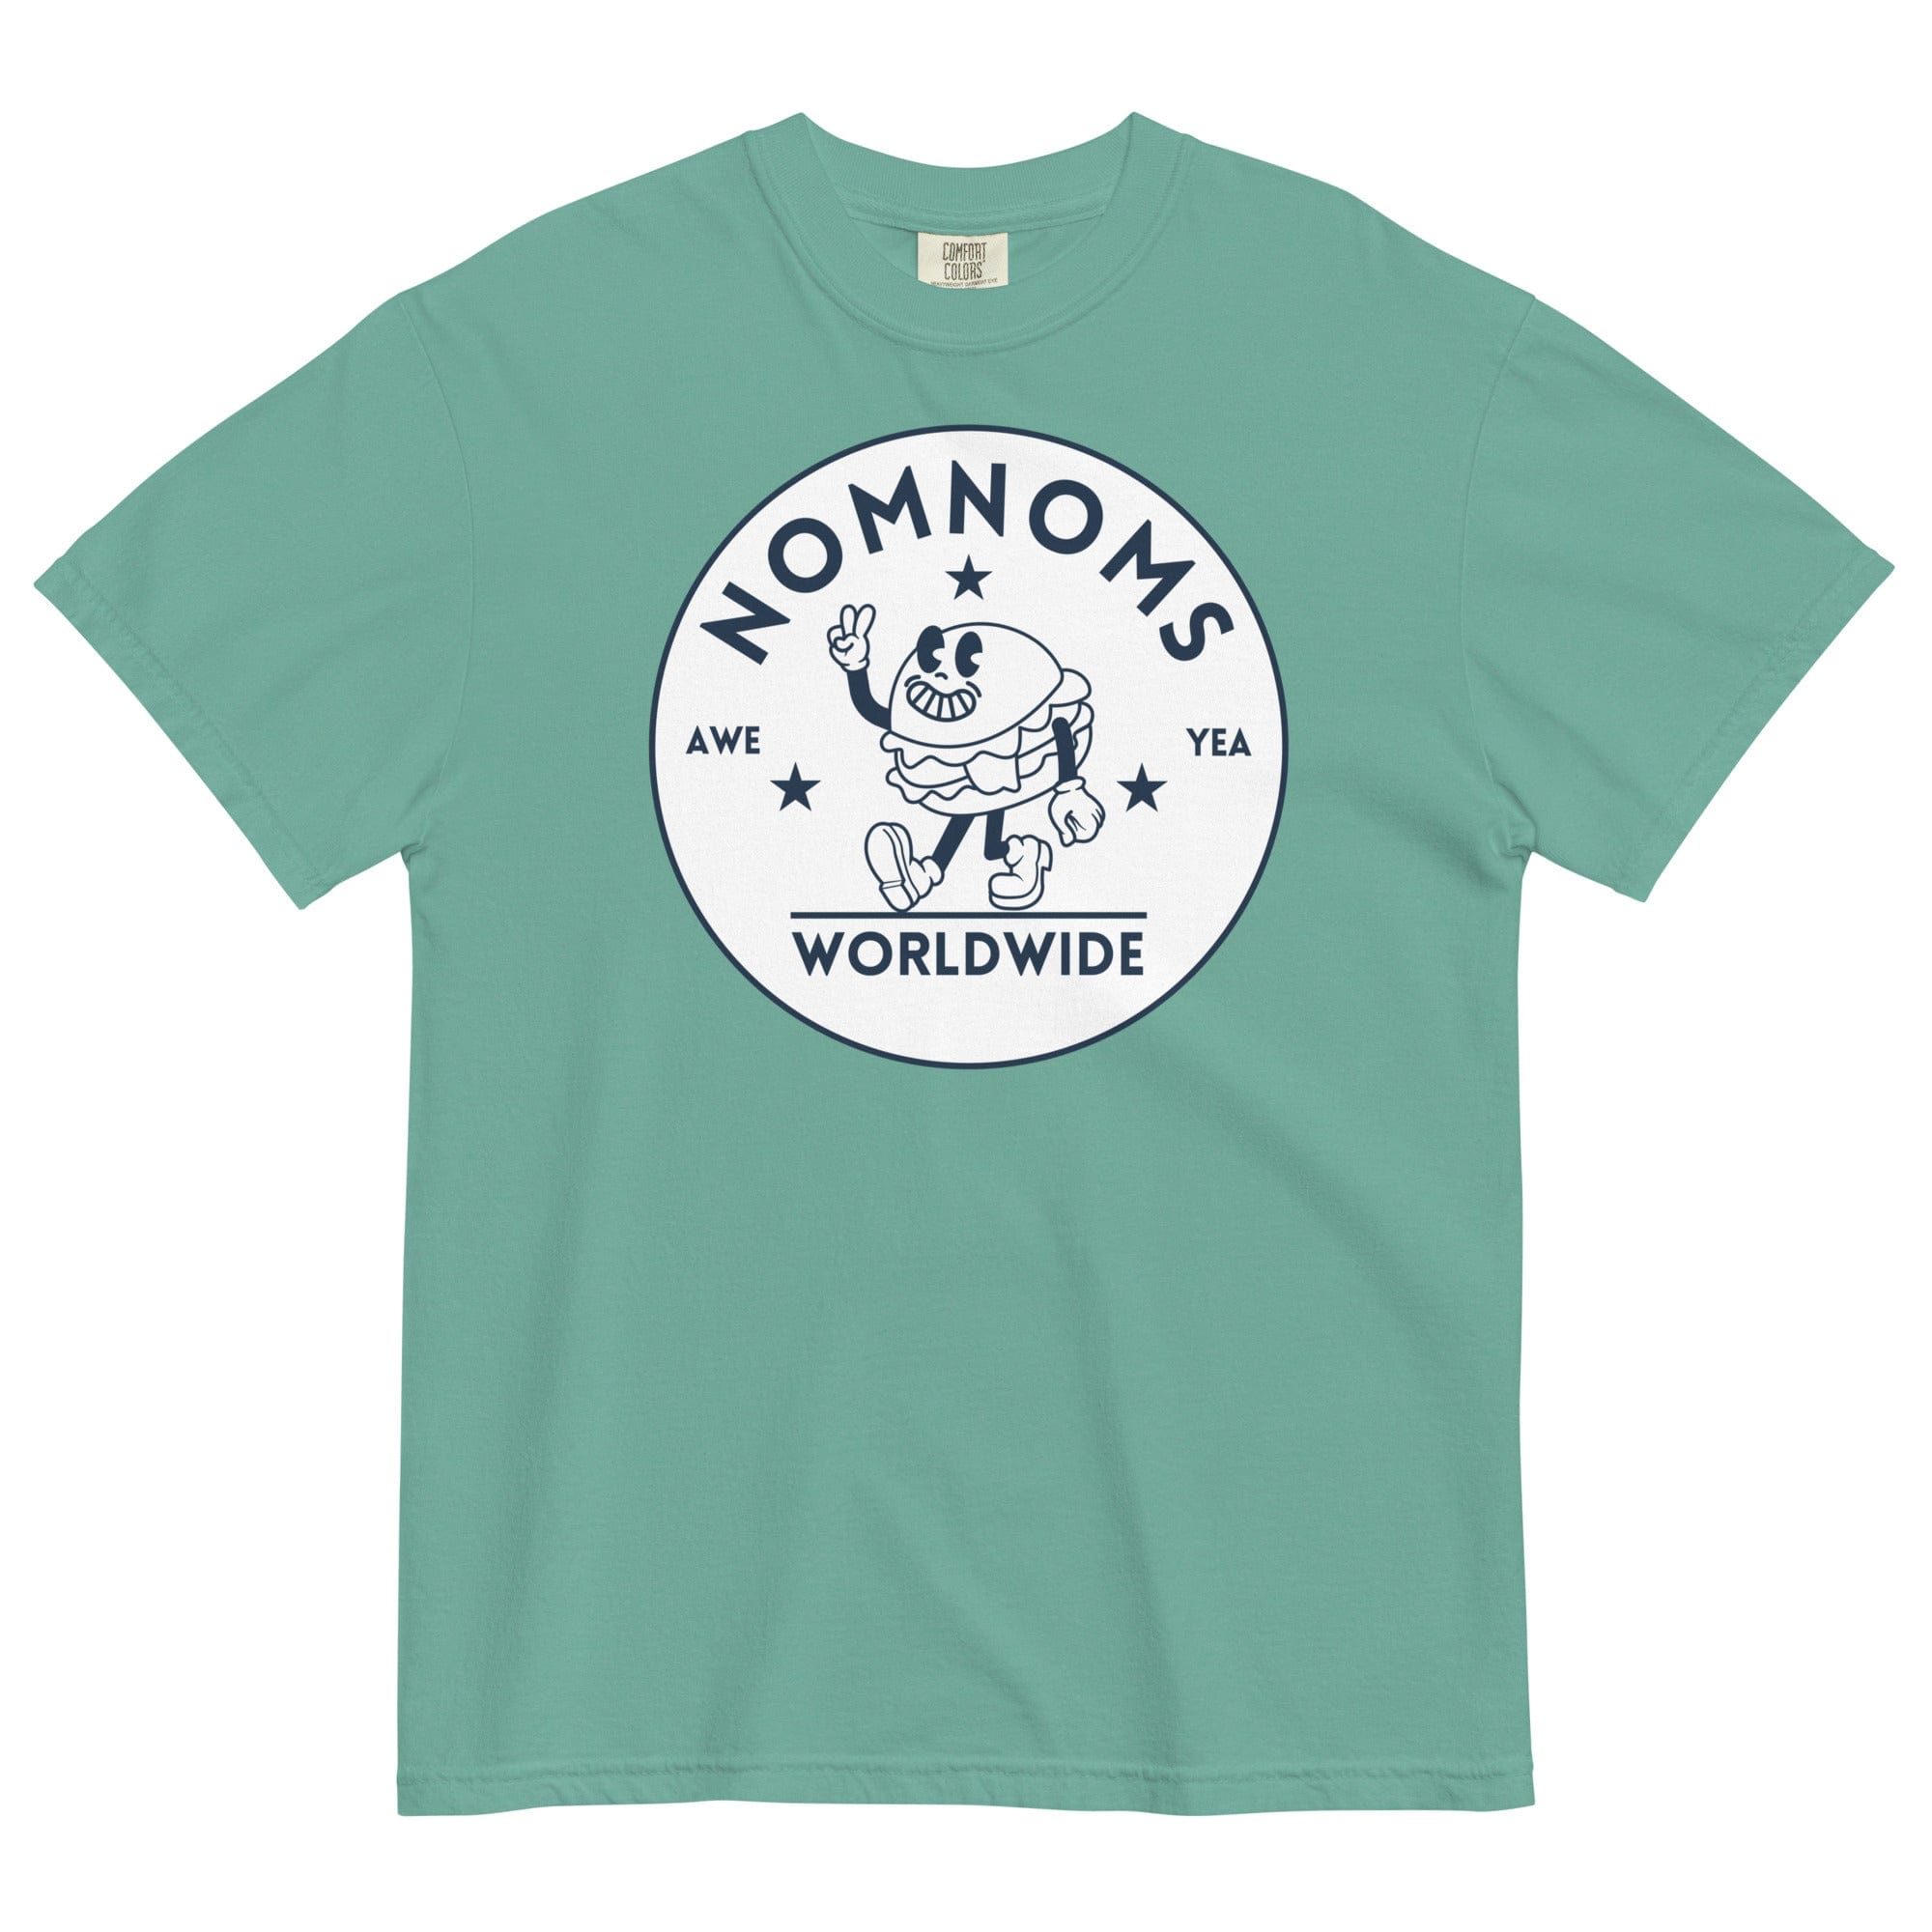 Nomnoms Worldwide Garment-dyed Heavyweight T-shirt Seafoam / S Shirts & Tops Jolly & Goode